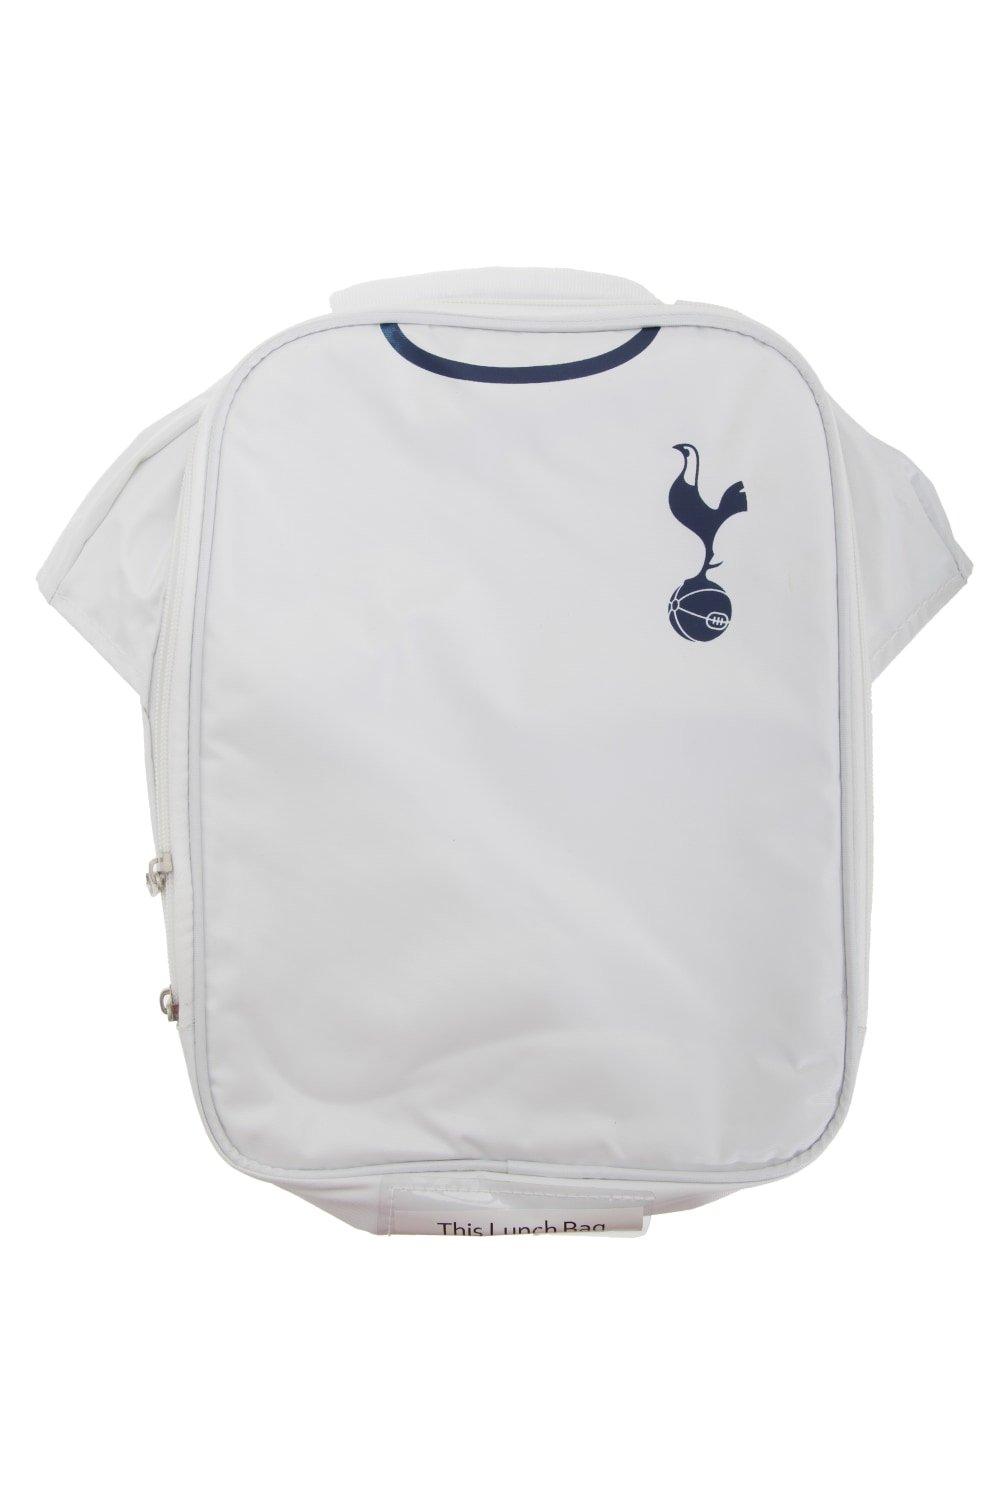 Официальная изолированная футбольная рубашка-холодильник для сумки для обеда Tottenham Hotspur FC, белый детские гетры тоттенхэм домашние 2021 2022 размер 29 36